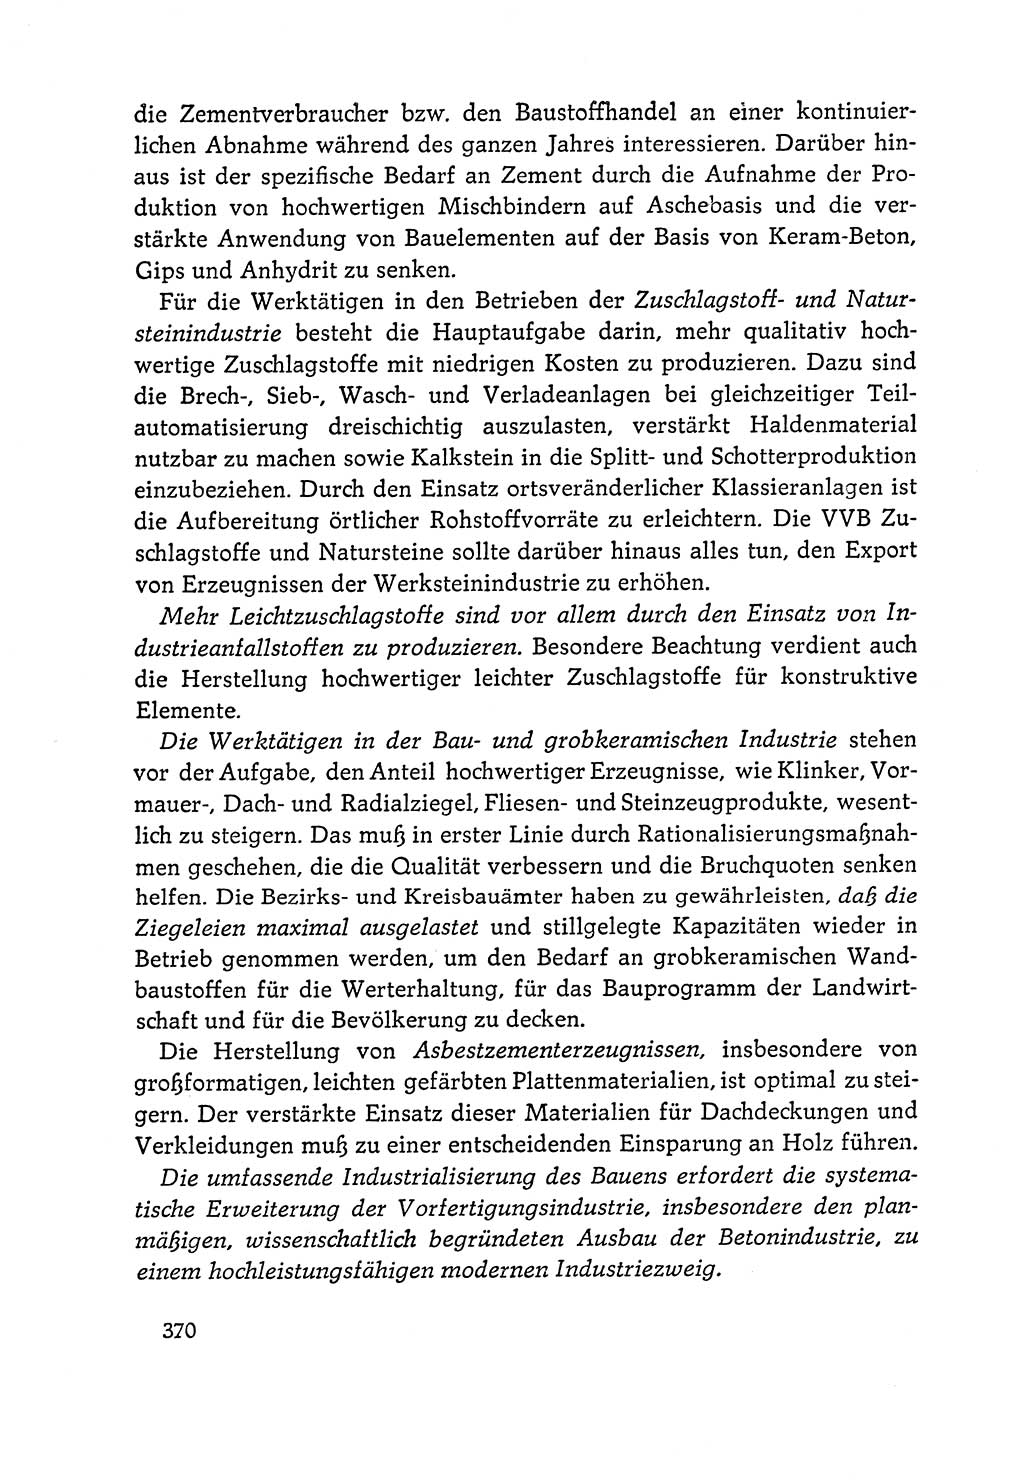 Dokumente der Sozialistischen Einheitspartei Deutschlands (SED) [Deutsche Demokratische Republik (DDR)] 1964-1965, Seite 370 (Dok. SED DDR 1964-1965, S. 370)